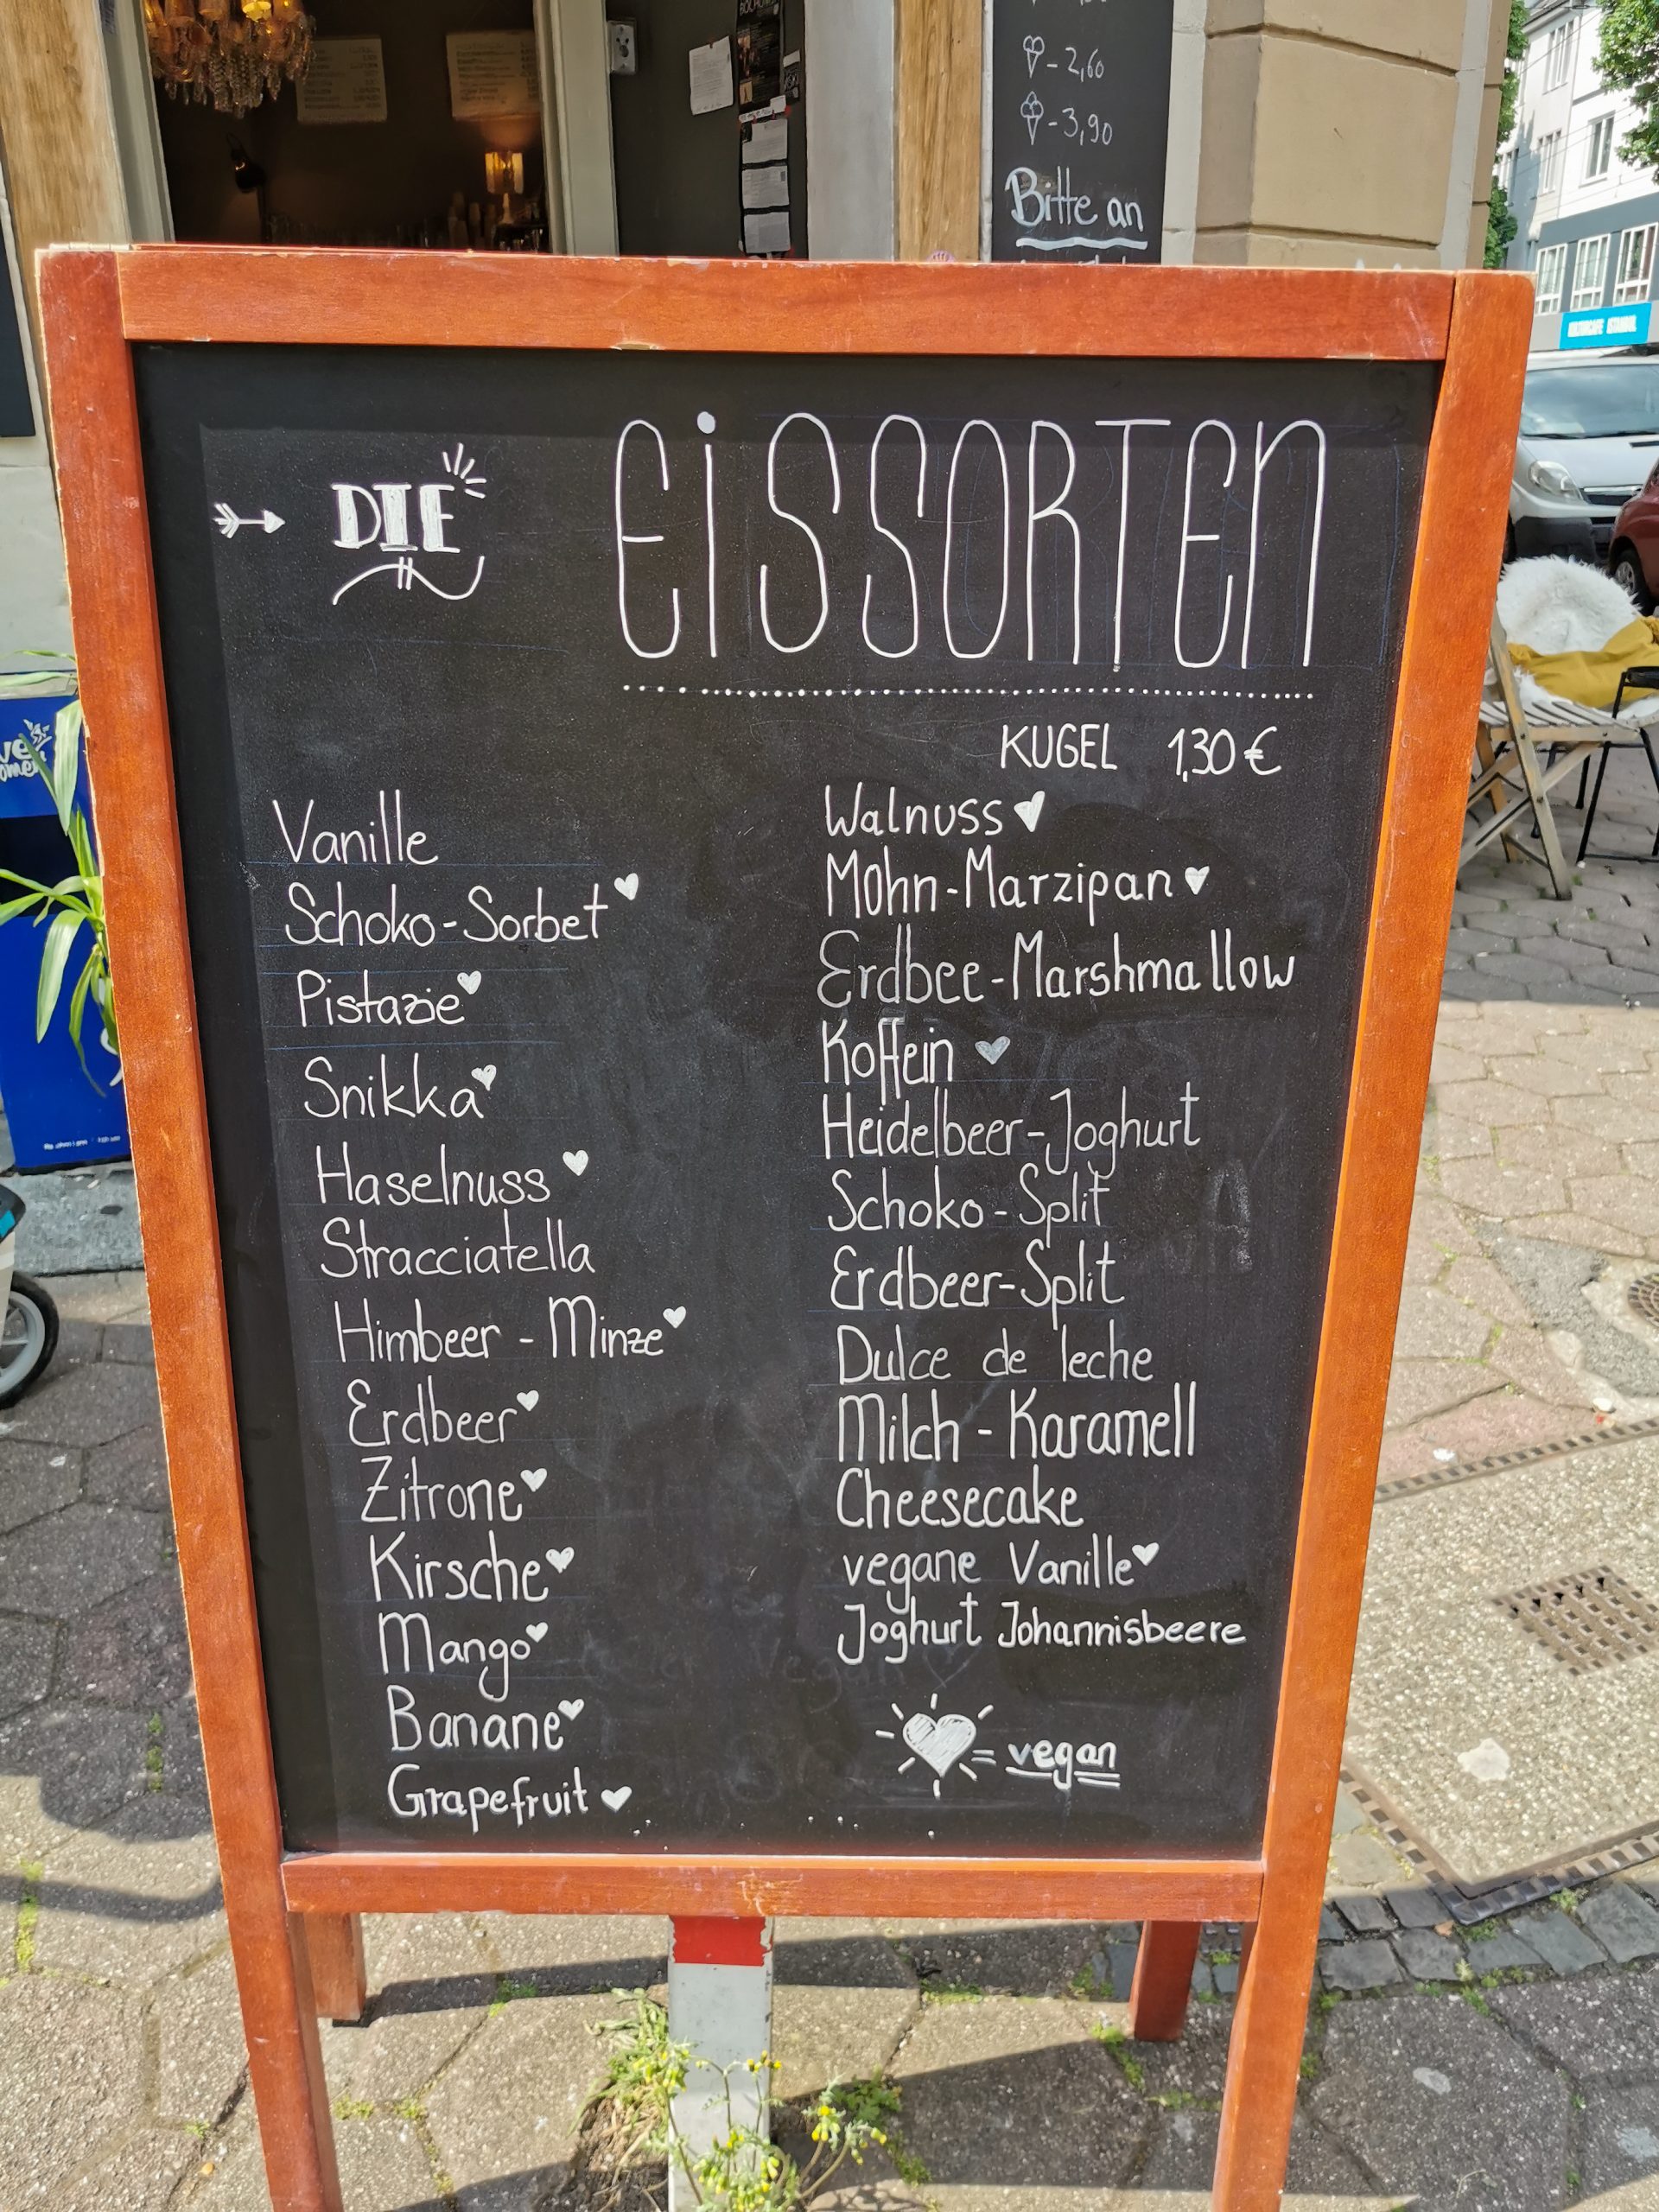 Das Foto zeigt das Eiscafé Kugelpudel im Kortländer Kiez in Bochum